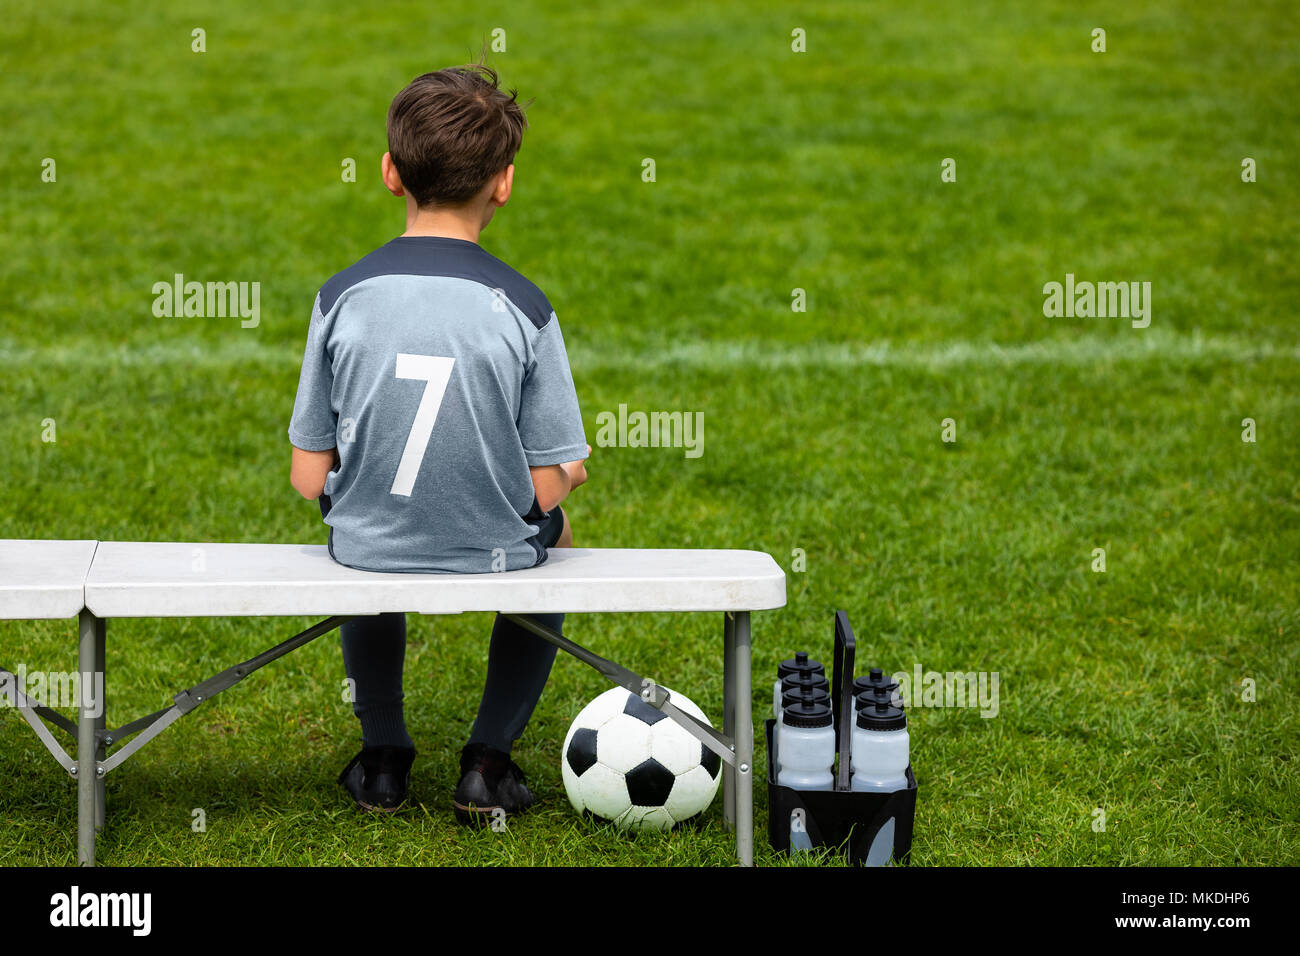 Panchina di calcio immagini e fotografie stock ad alta risoluzione - Alamy